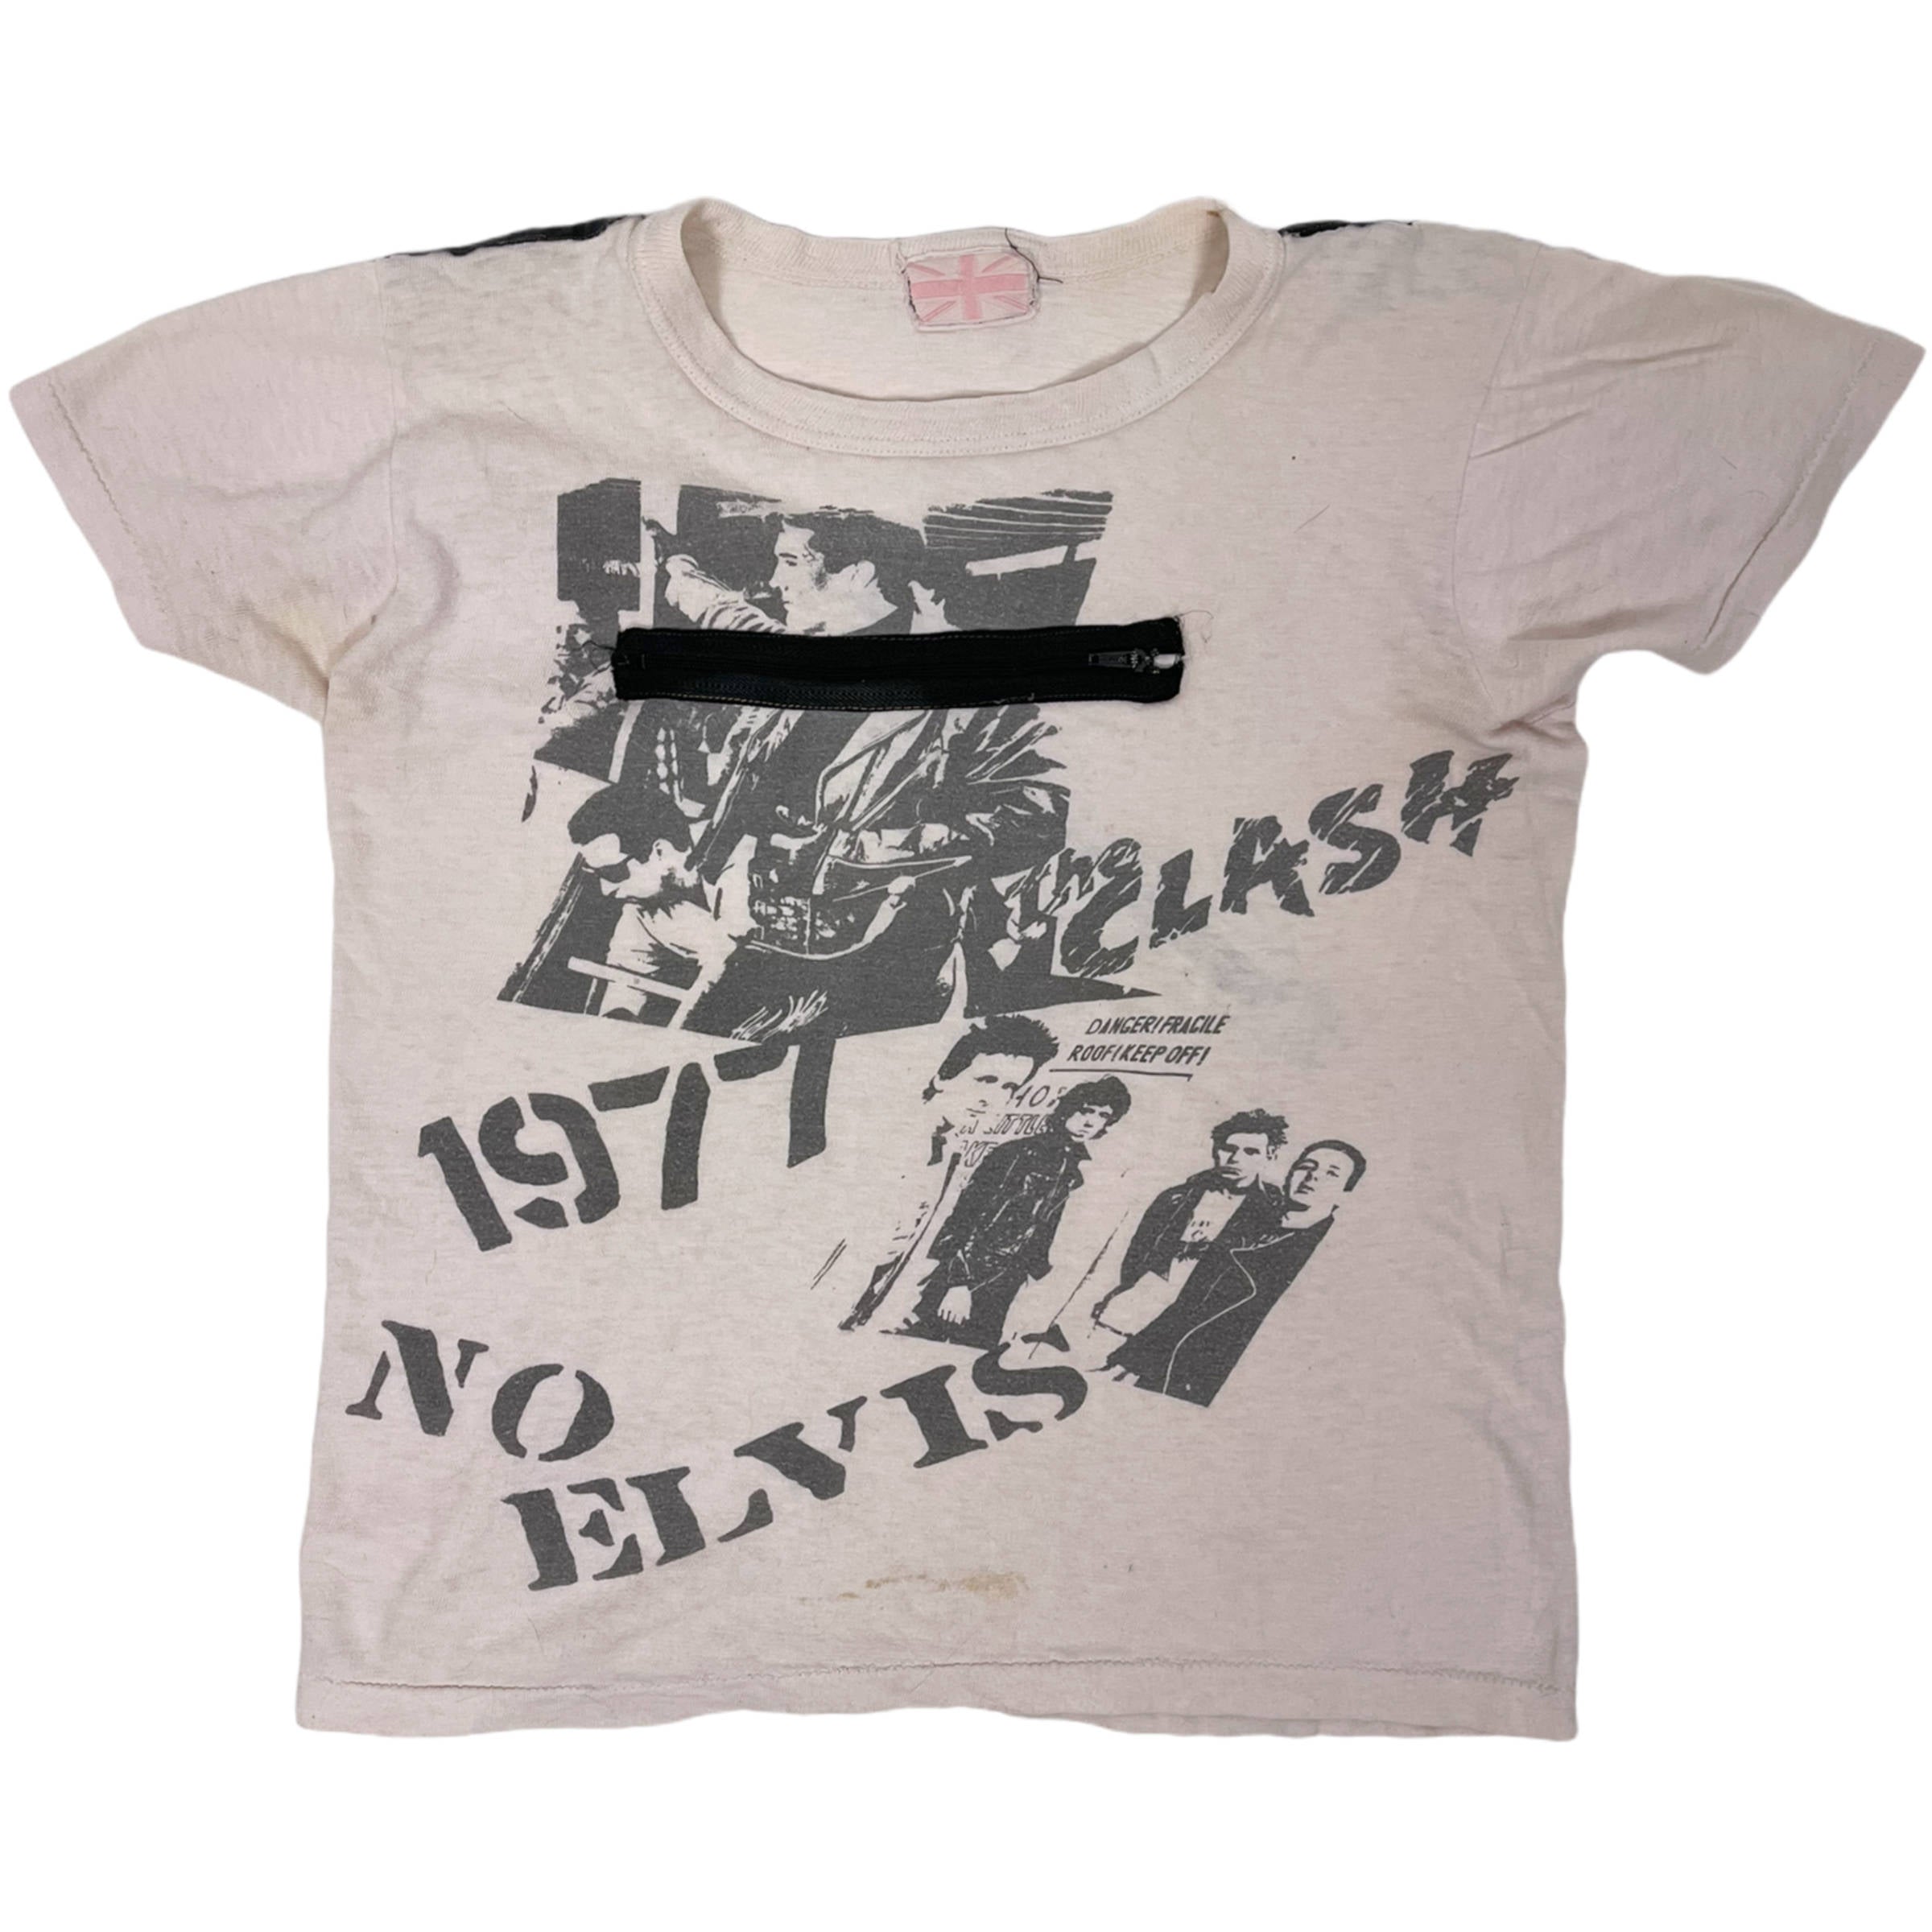 Vintage Punk Rock T The Clash 1977 No Elvis Authentic